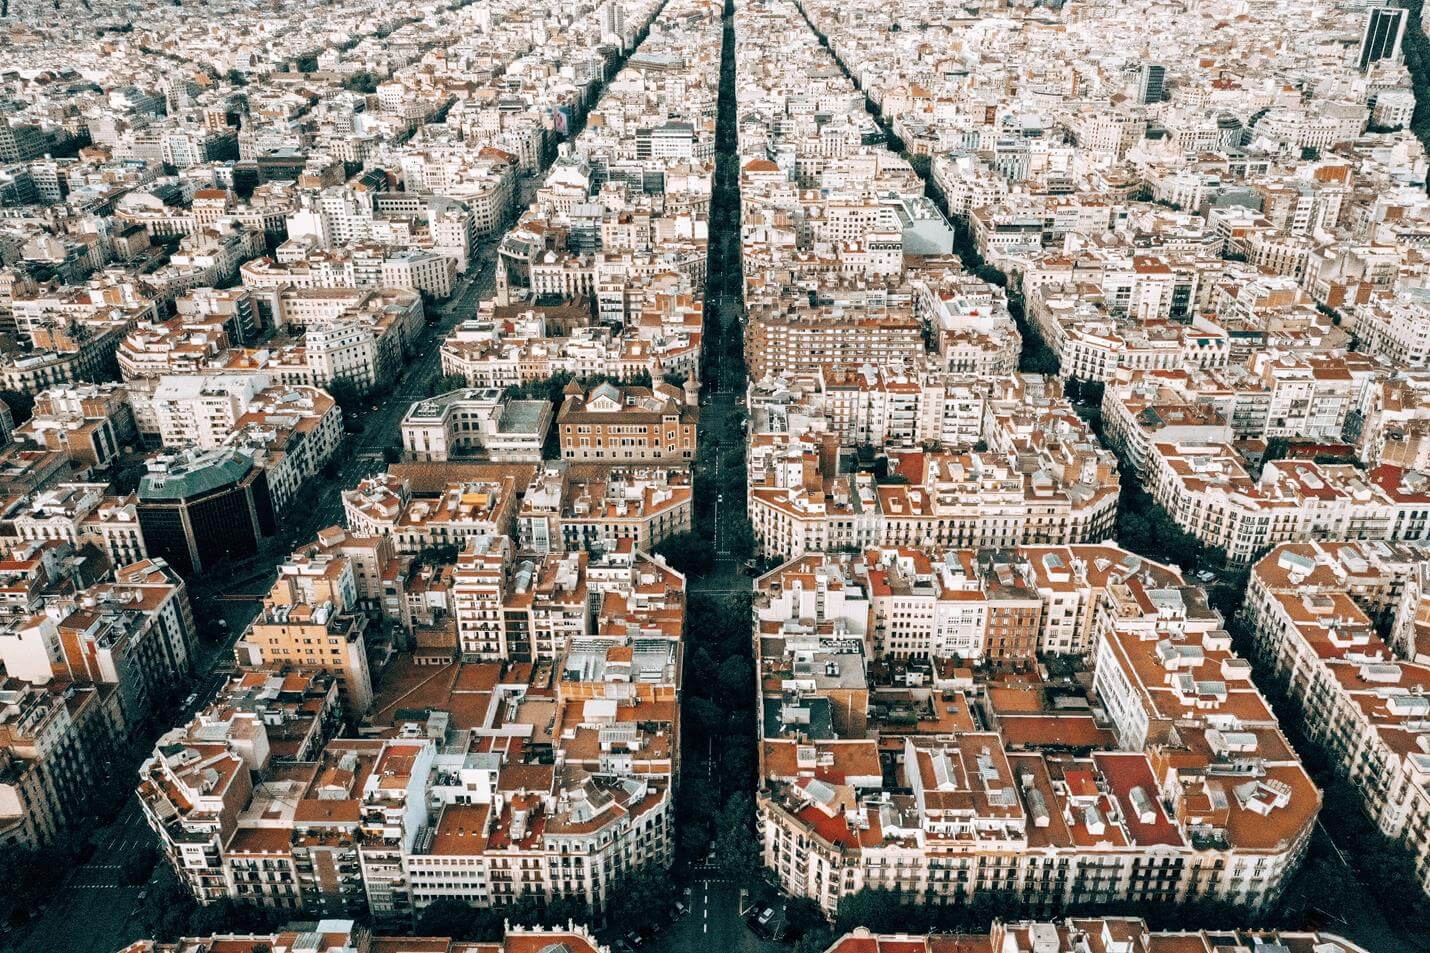 Stadtplan für Barcelona - Top